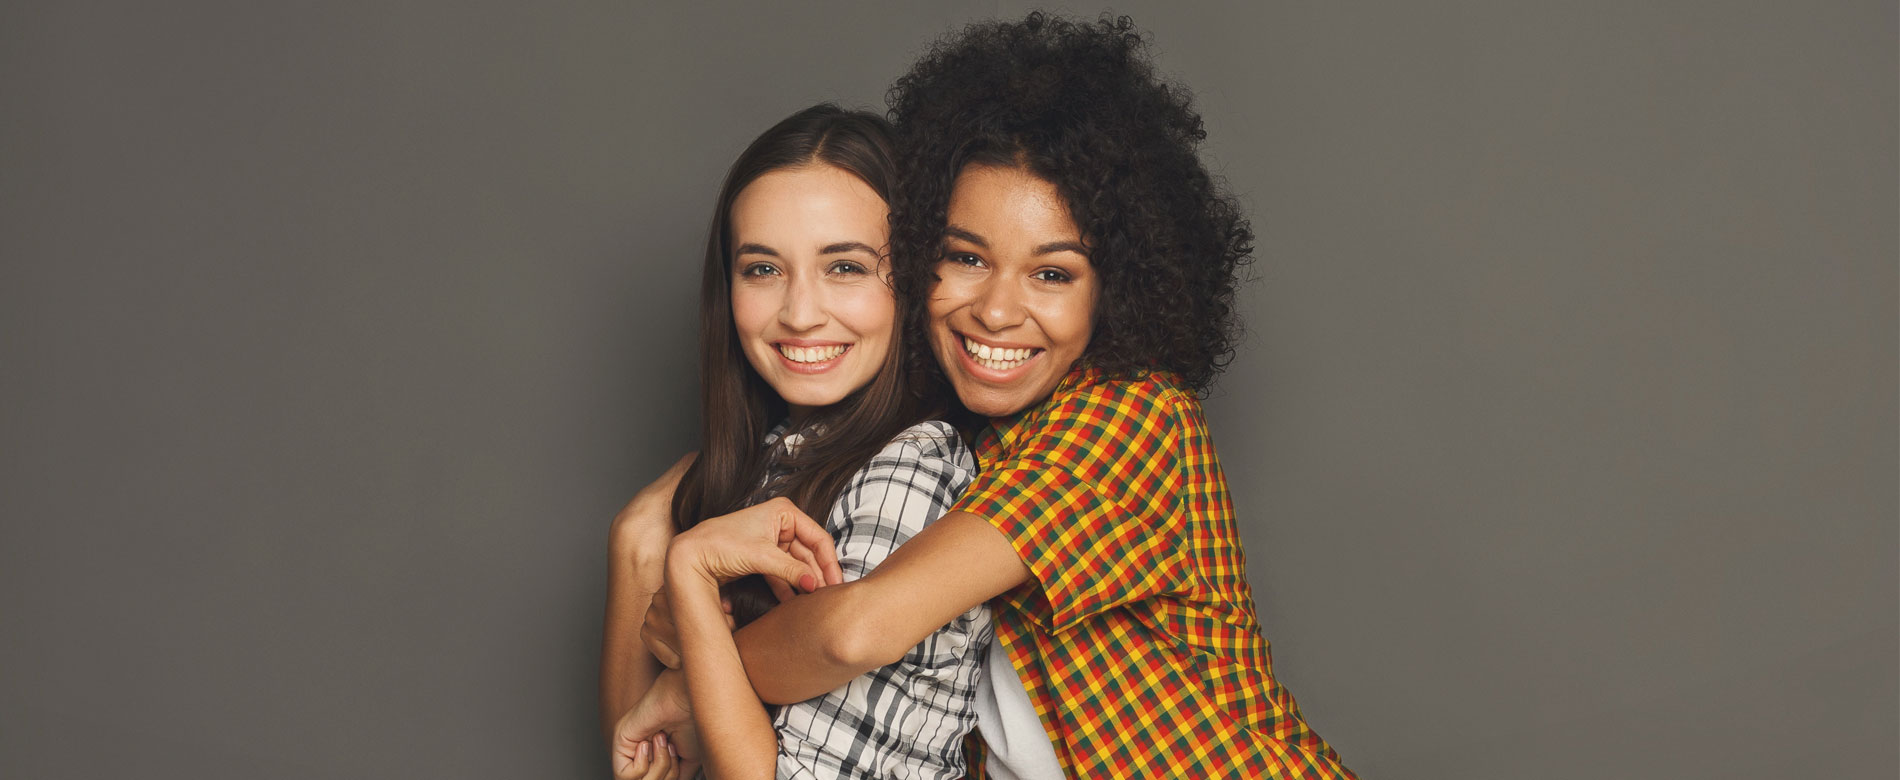 Resposta aos Internautas – “Como conquistar uma amizade verdadeira?”